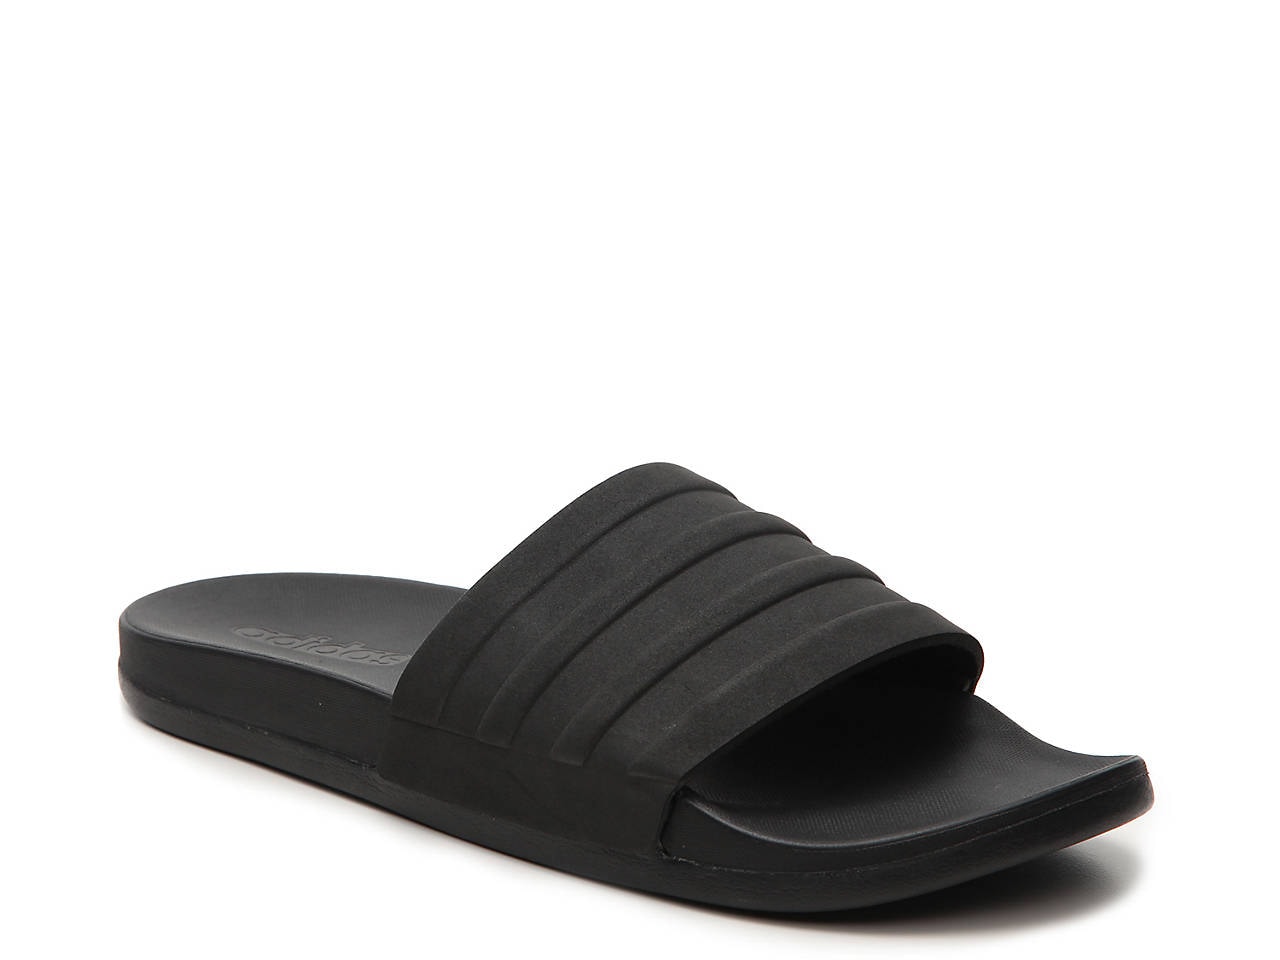 Adilette Cloudfoam Slide Sandal - Men's